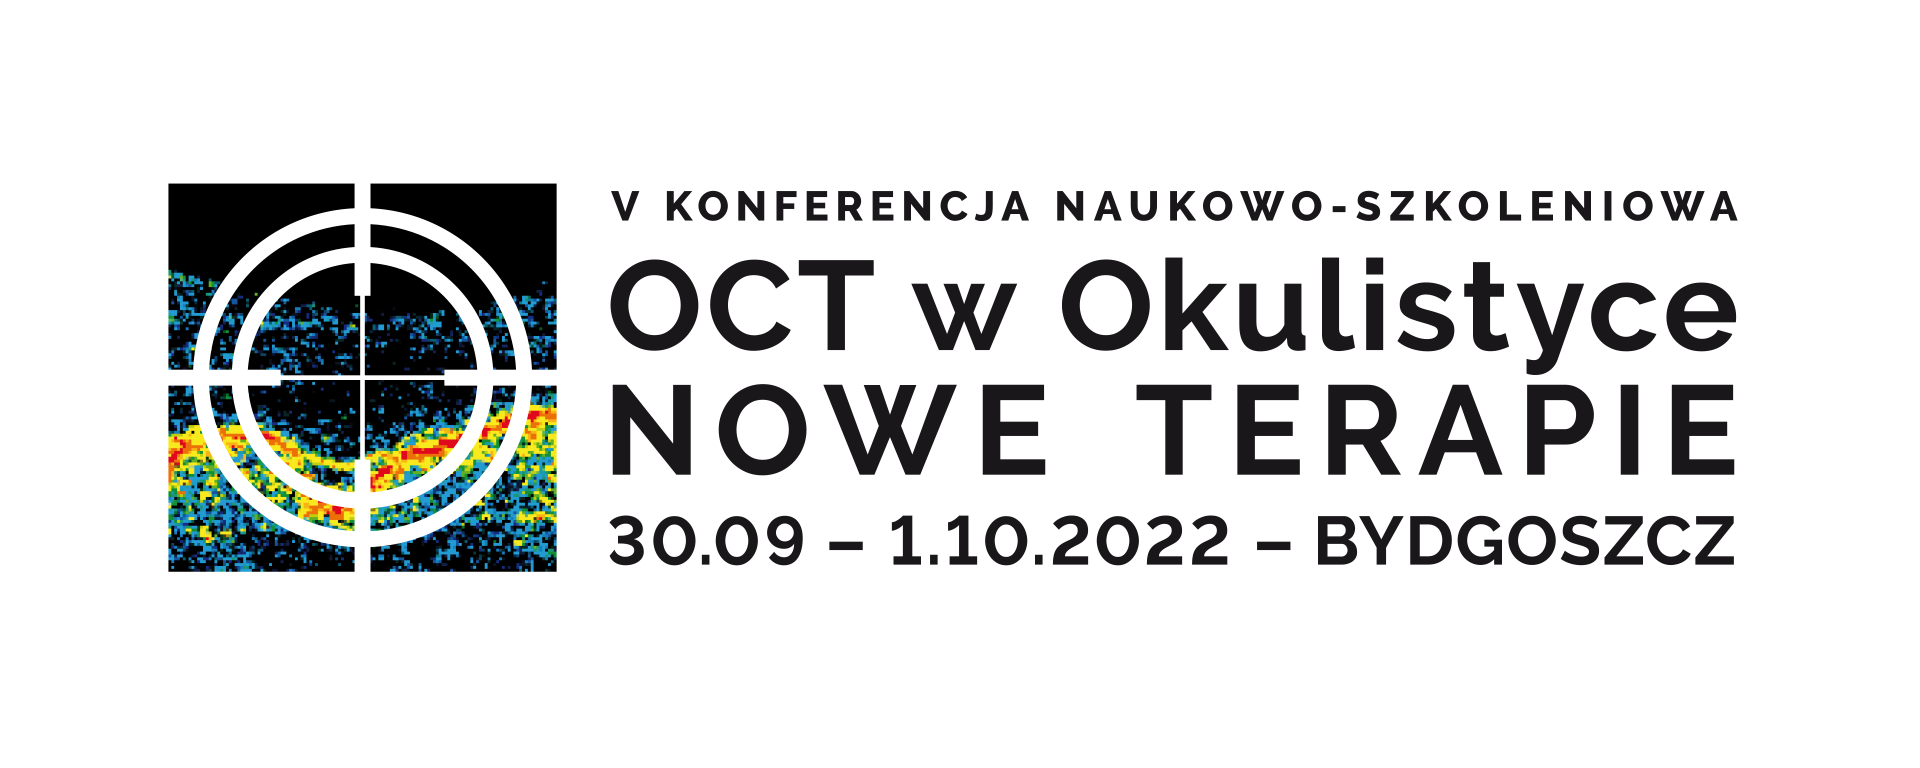 V Konferencja Naukowo - Szkoleniowa  OCT w Okulistyce NOWE TERAPIE